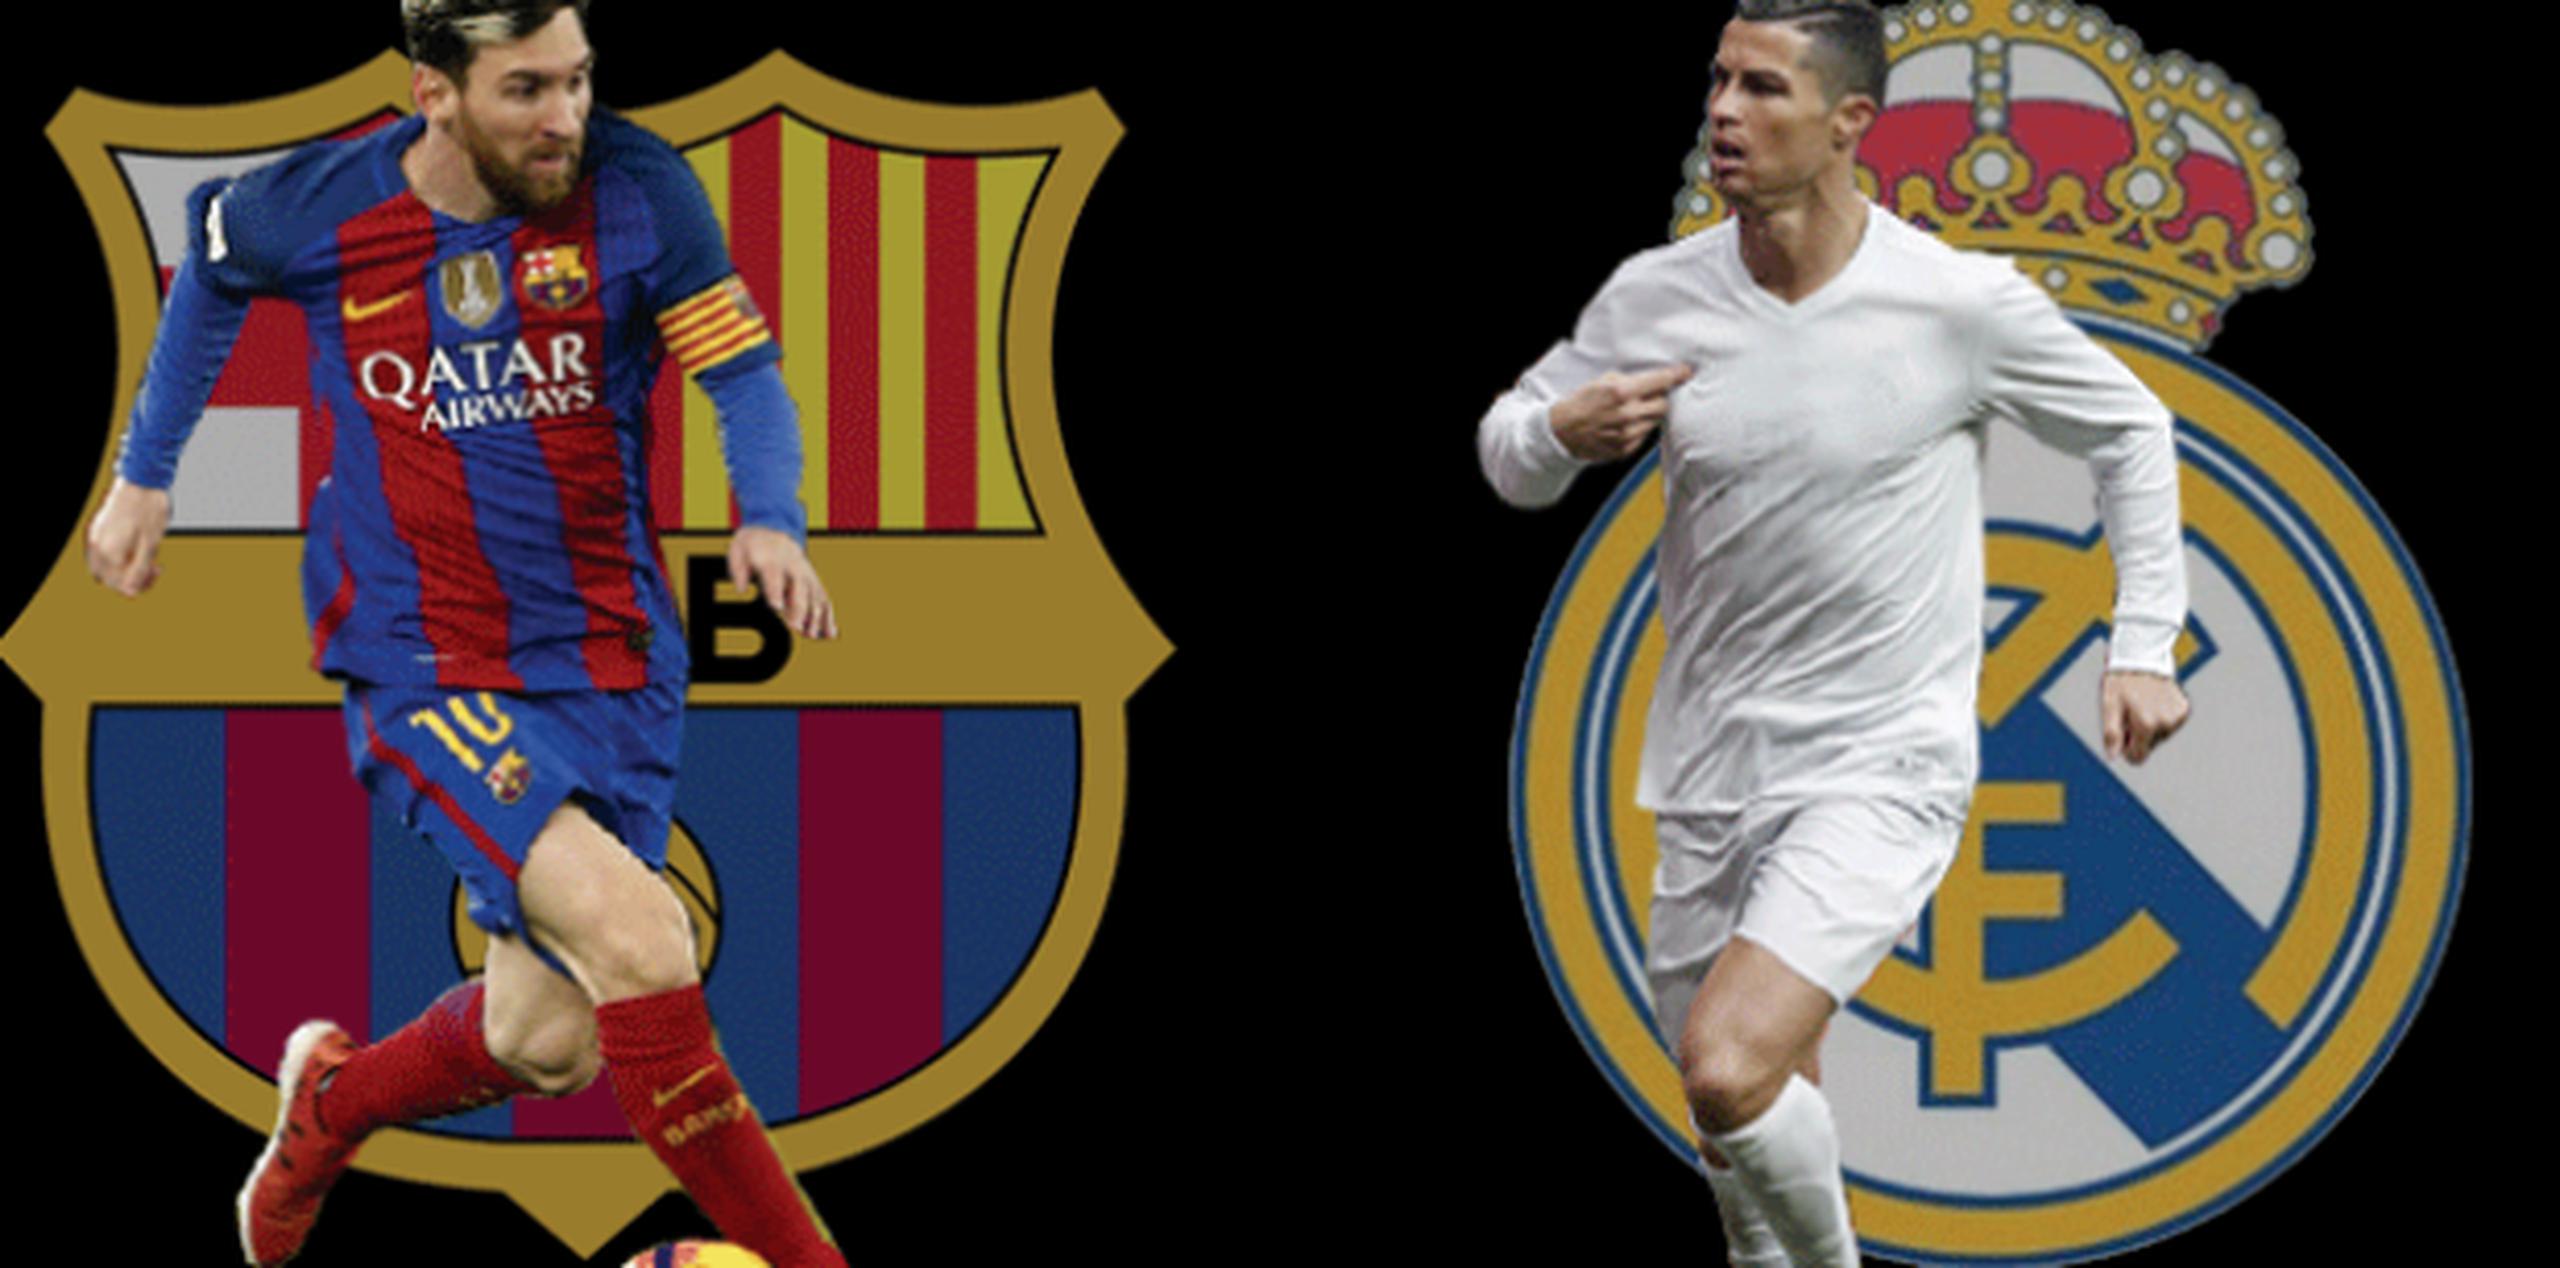 La relevancia del Clásico ha ido en aumento gracias a jugadores como Lionel Messi y Cristiano Ronaldo, figuras que son atracciones a nivel mundial. (Fotomontaje / Olga Román)